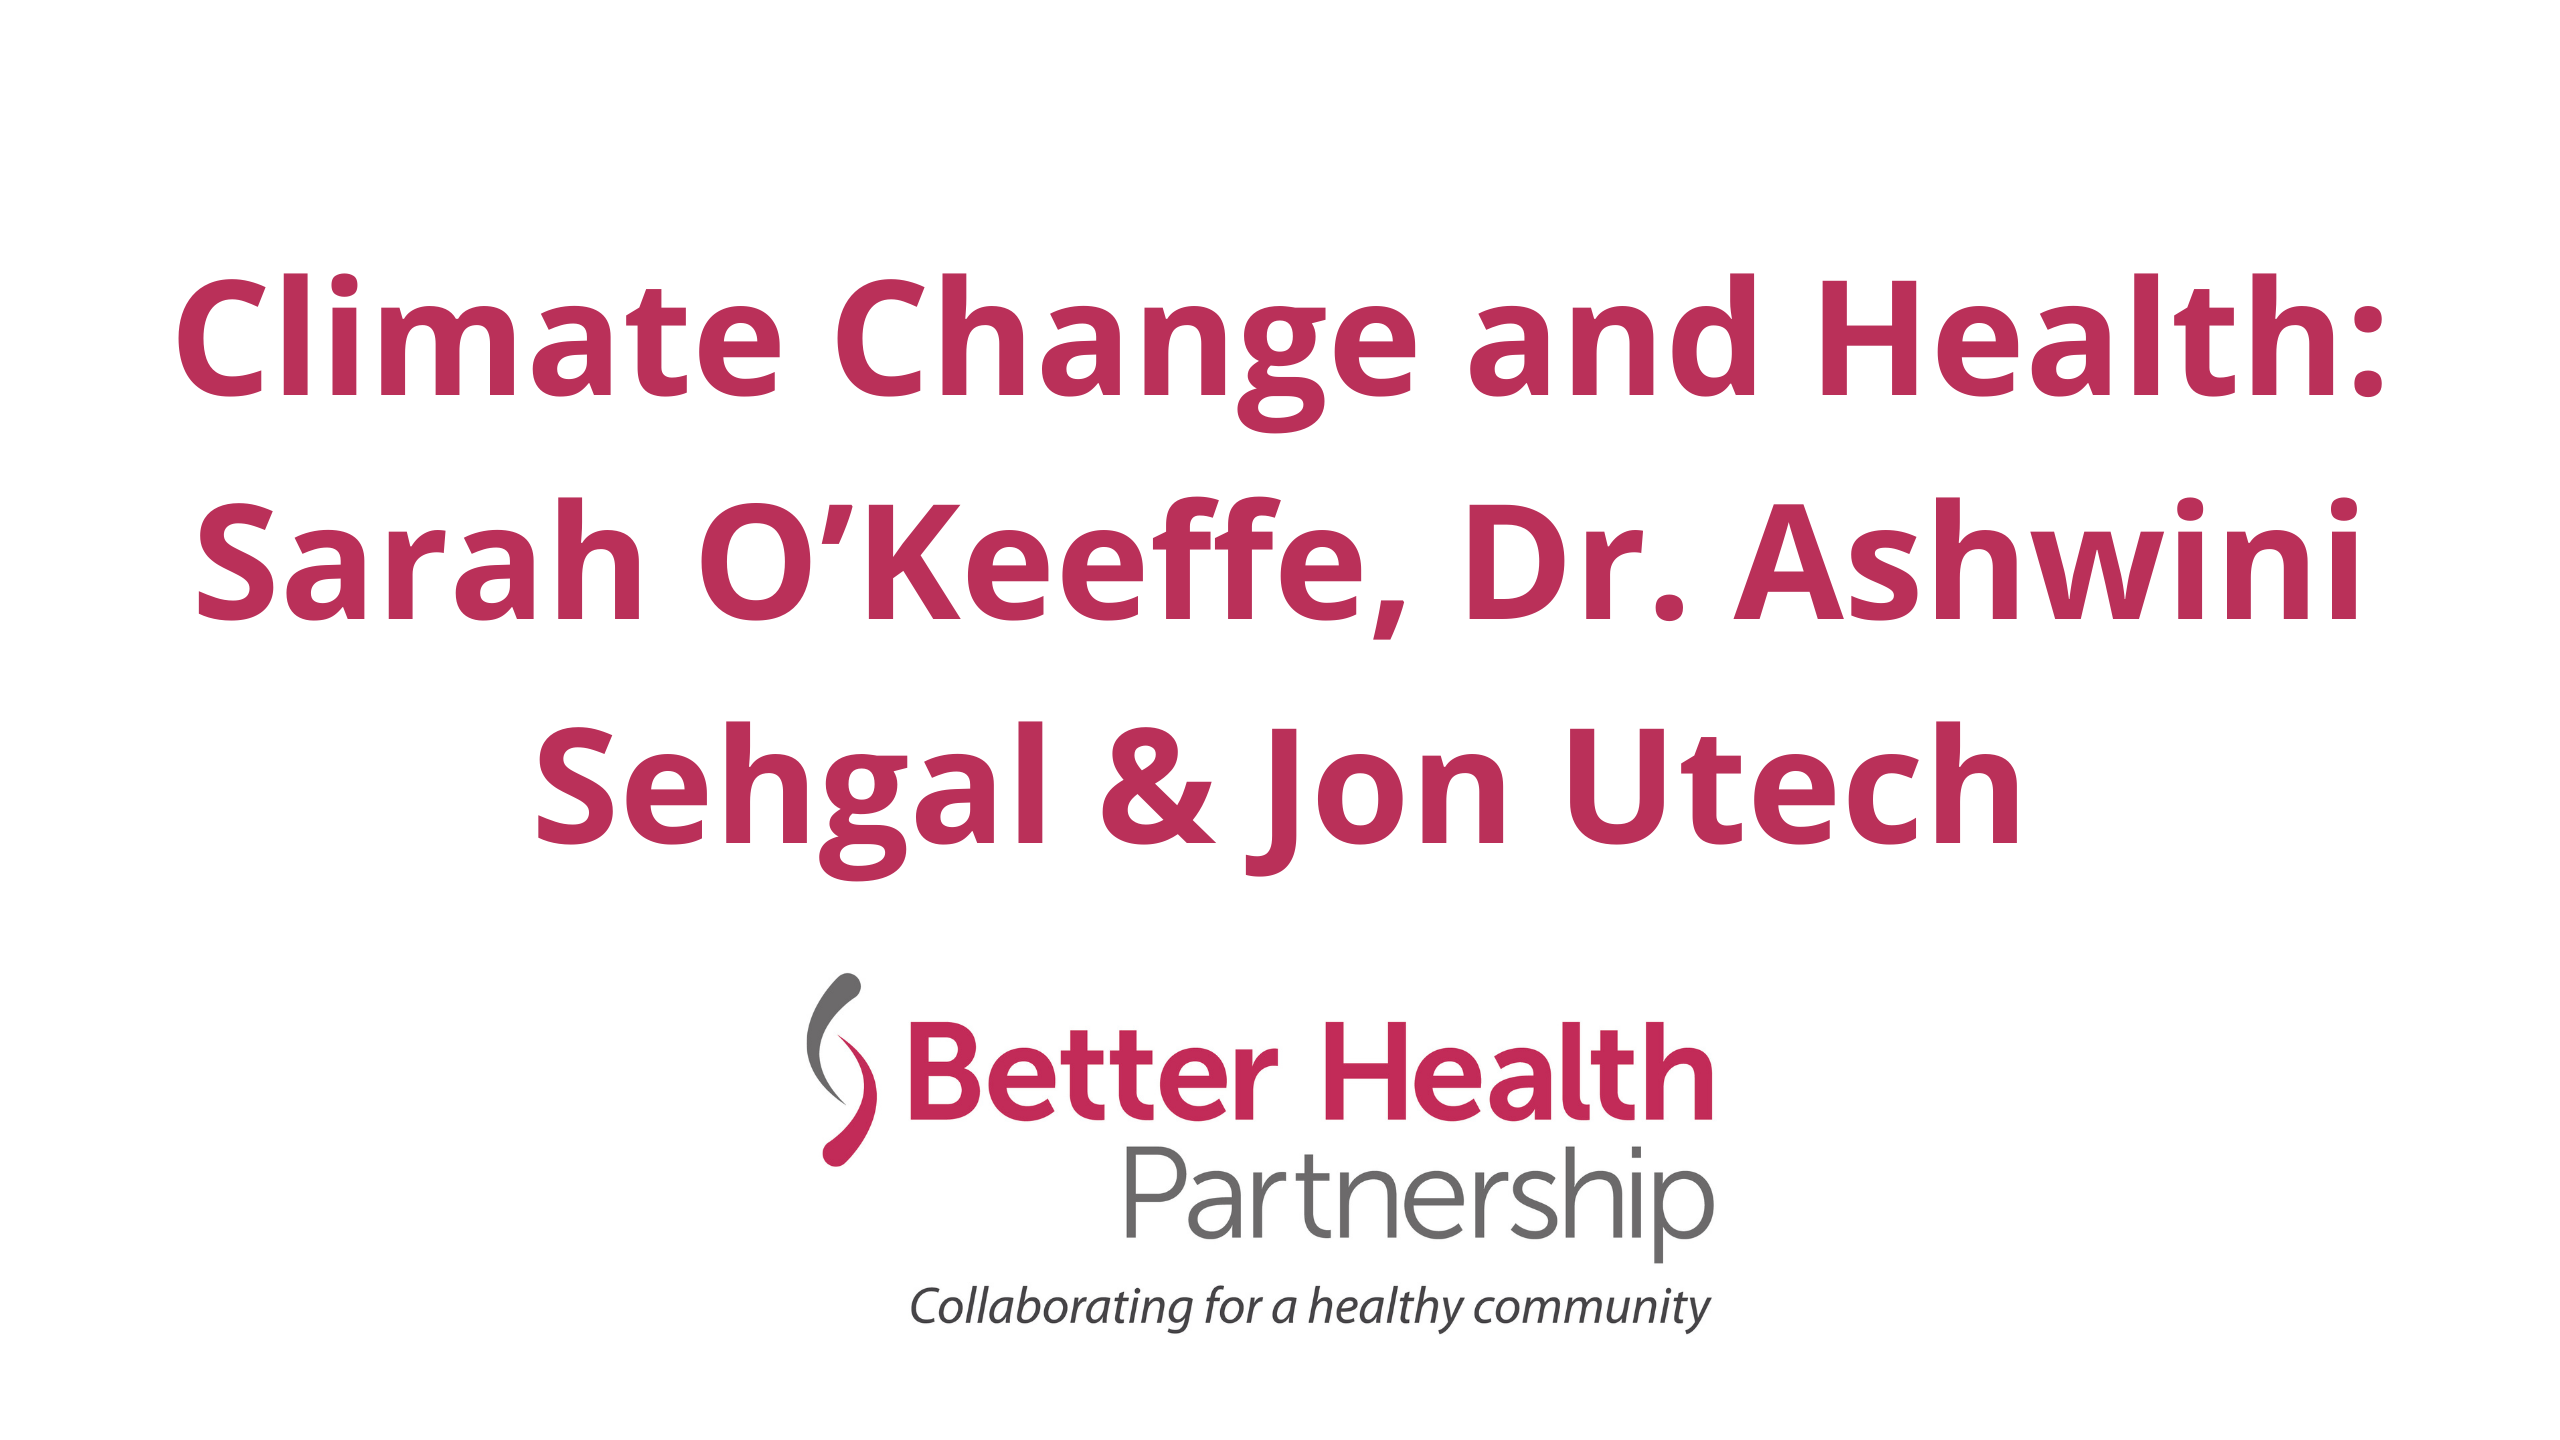 Climate Change and Health: Sarah O’Keeffe, Dr. Ashwini Sehgal & Jon Utech